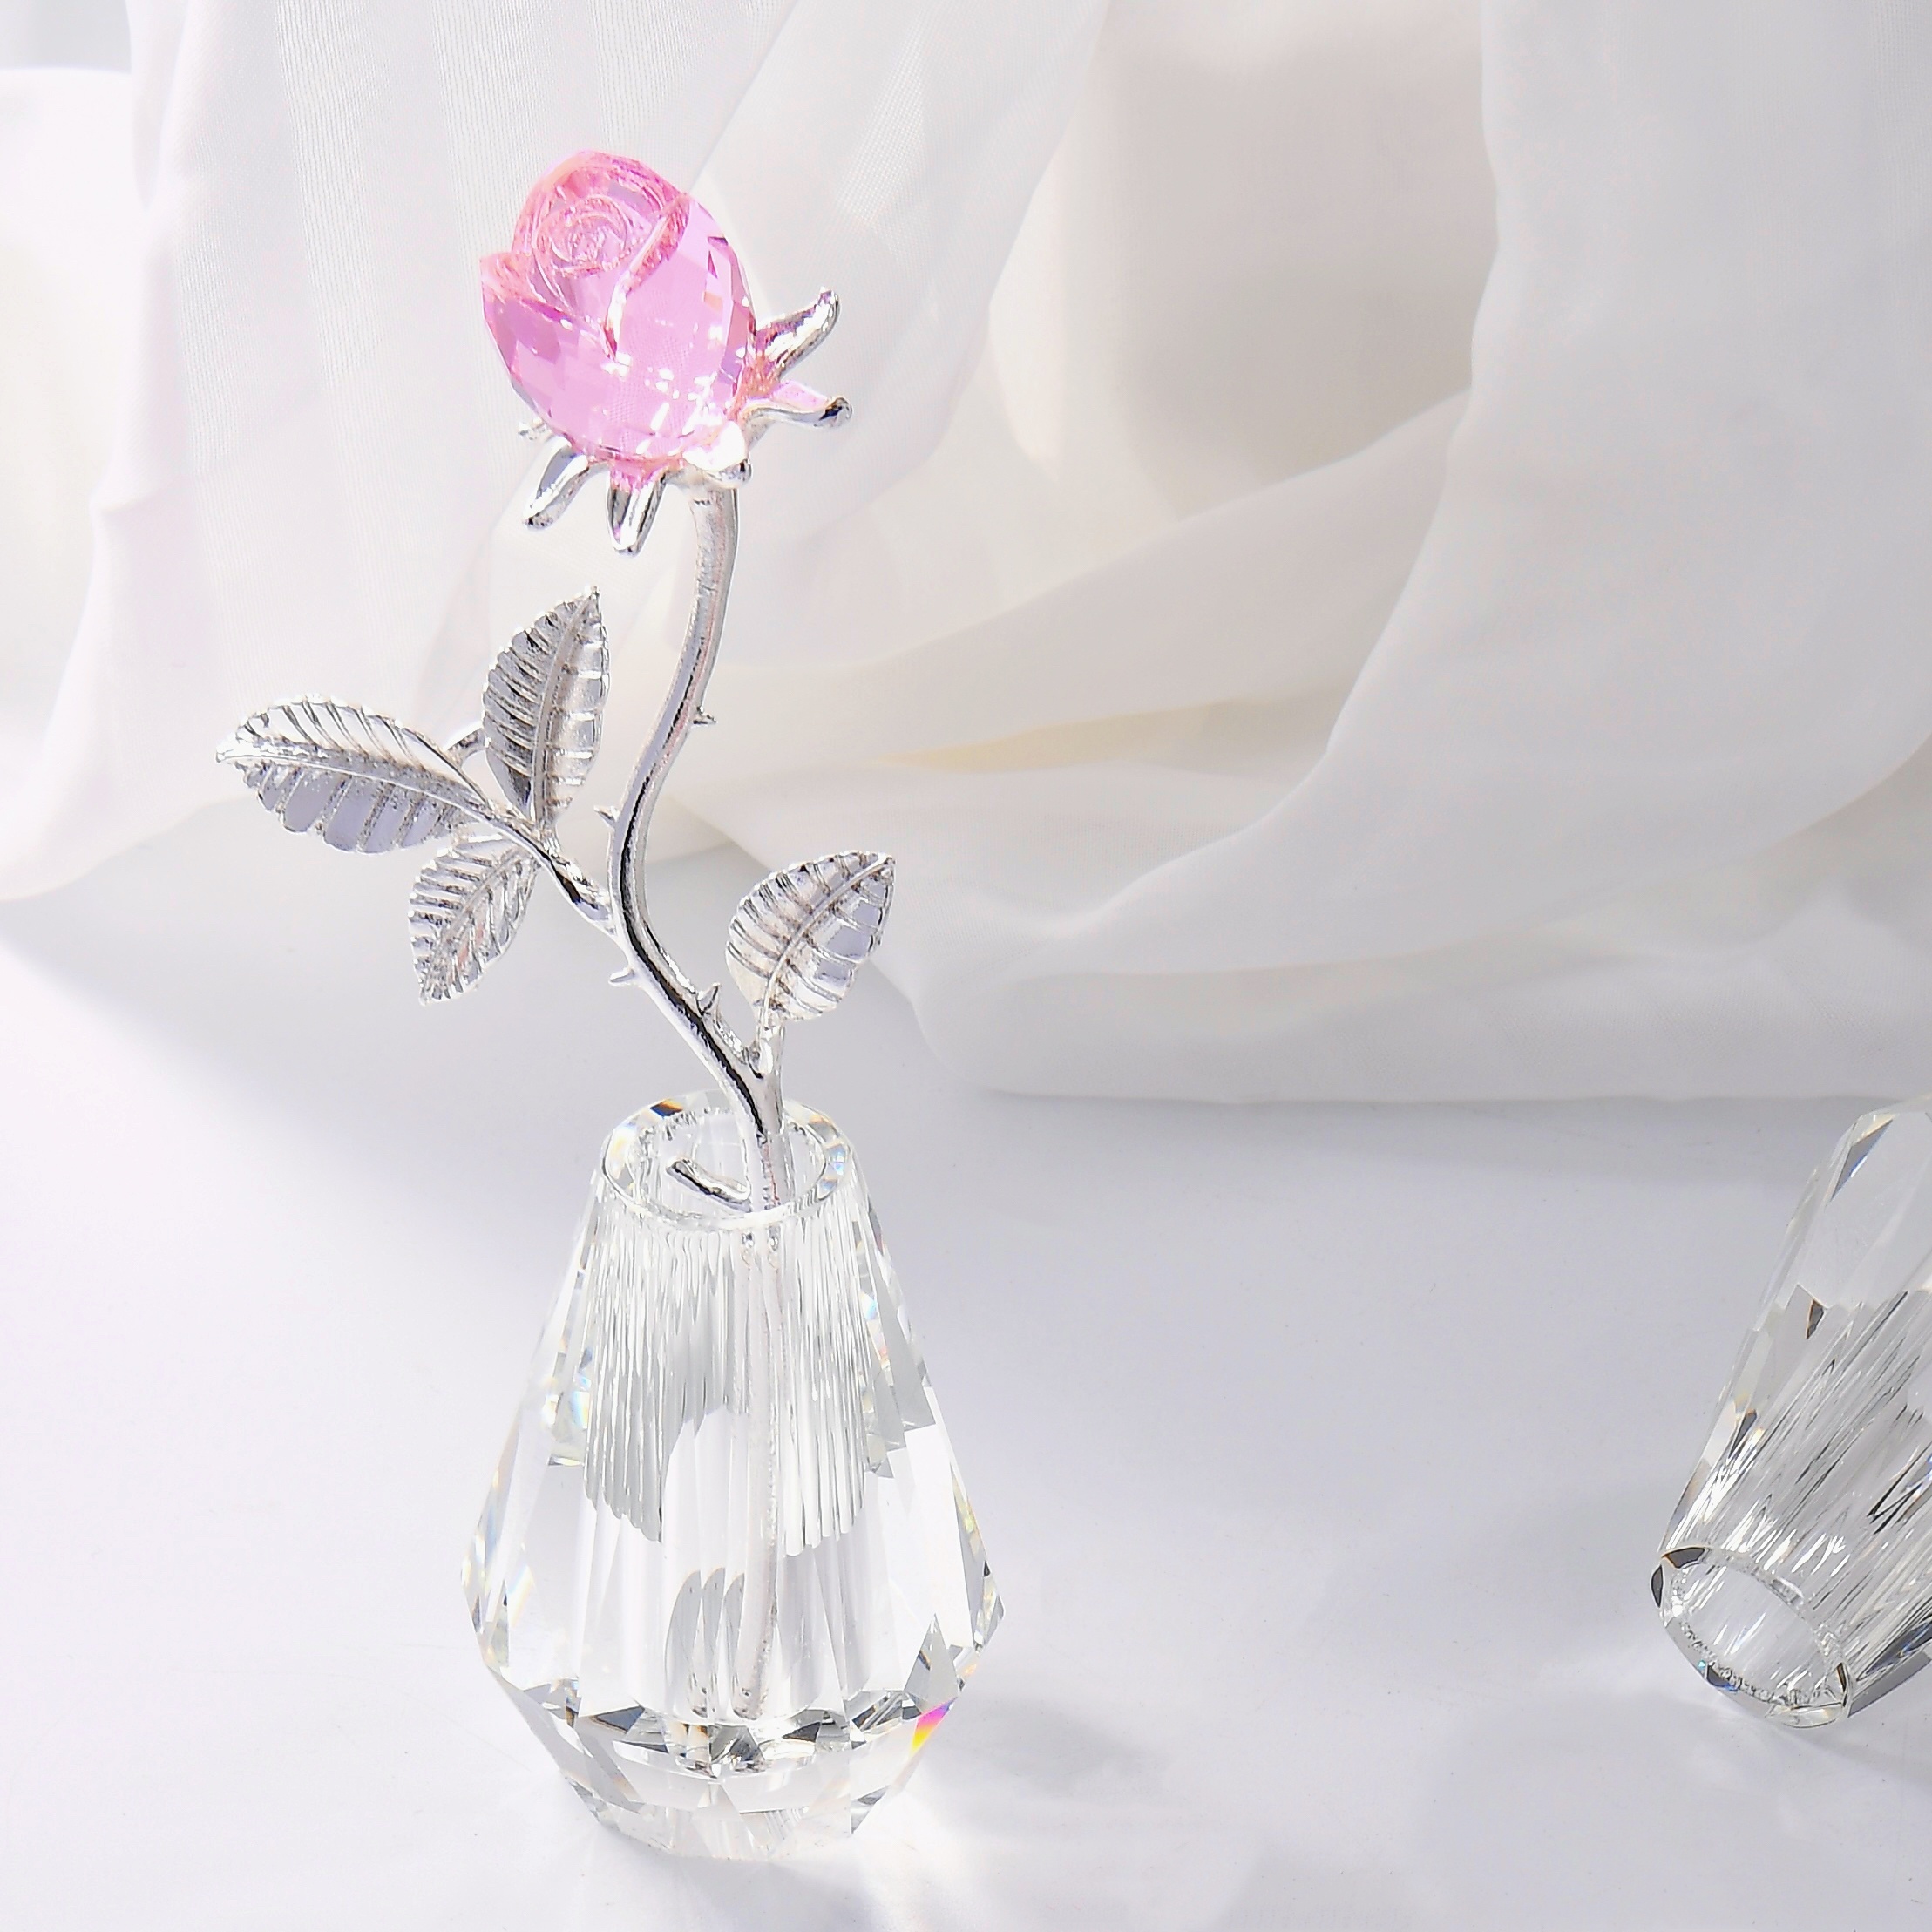  NEW Express$ Venta de Navidad Cristal de cuarzo Flor de loto  Adornos Feng Shui Cristales Flores Regalos Artesanías para la decoración  del hogar Boda : Hogar y Cocina